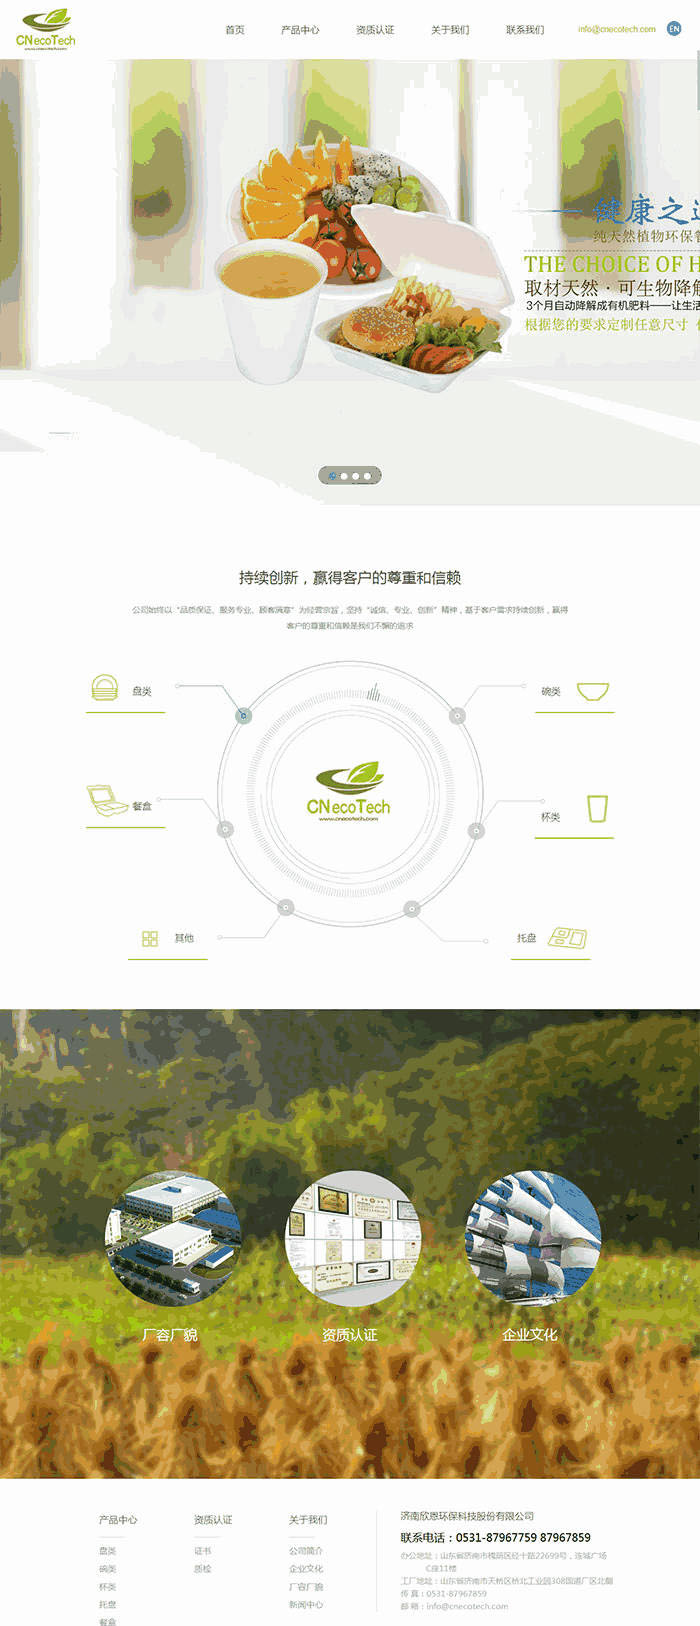 绿色的环保科技公司官网Wordpress模板（带手机版）效果图